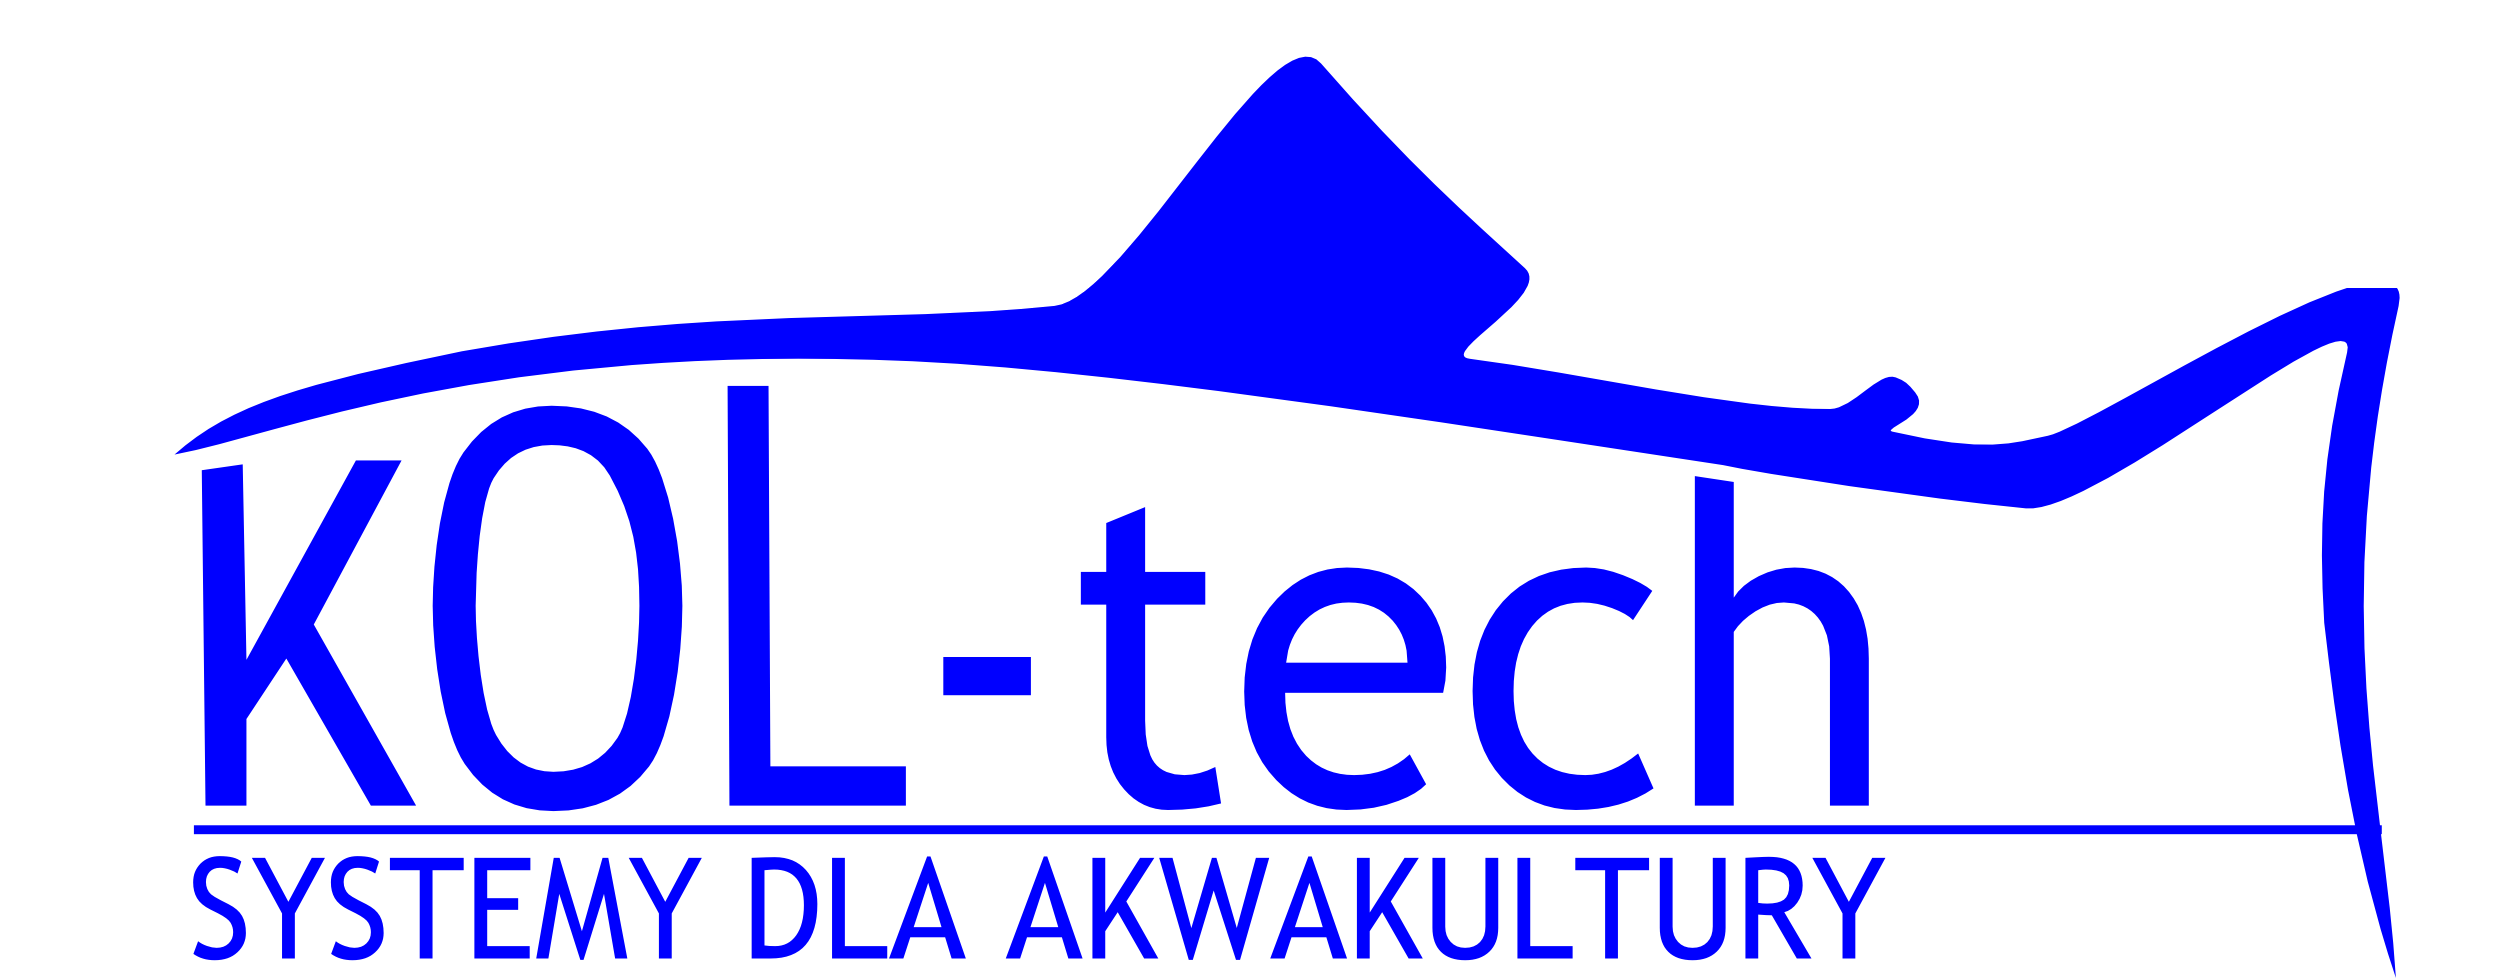 logo_koltech